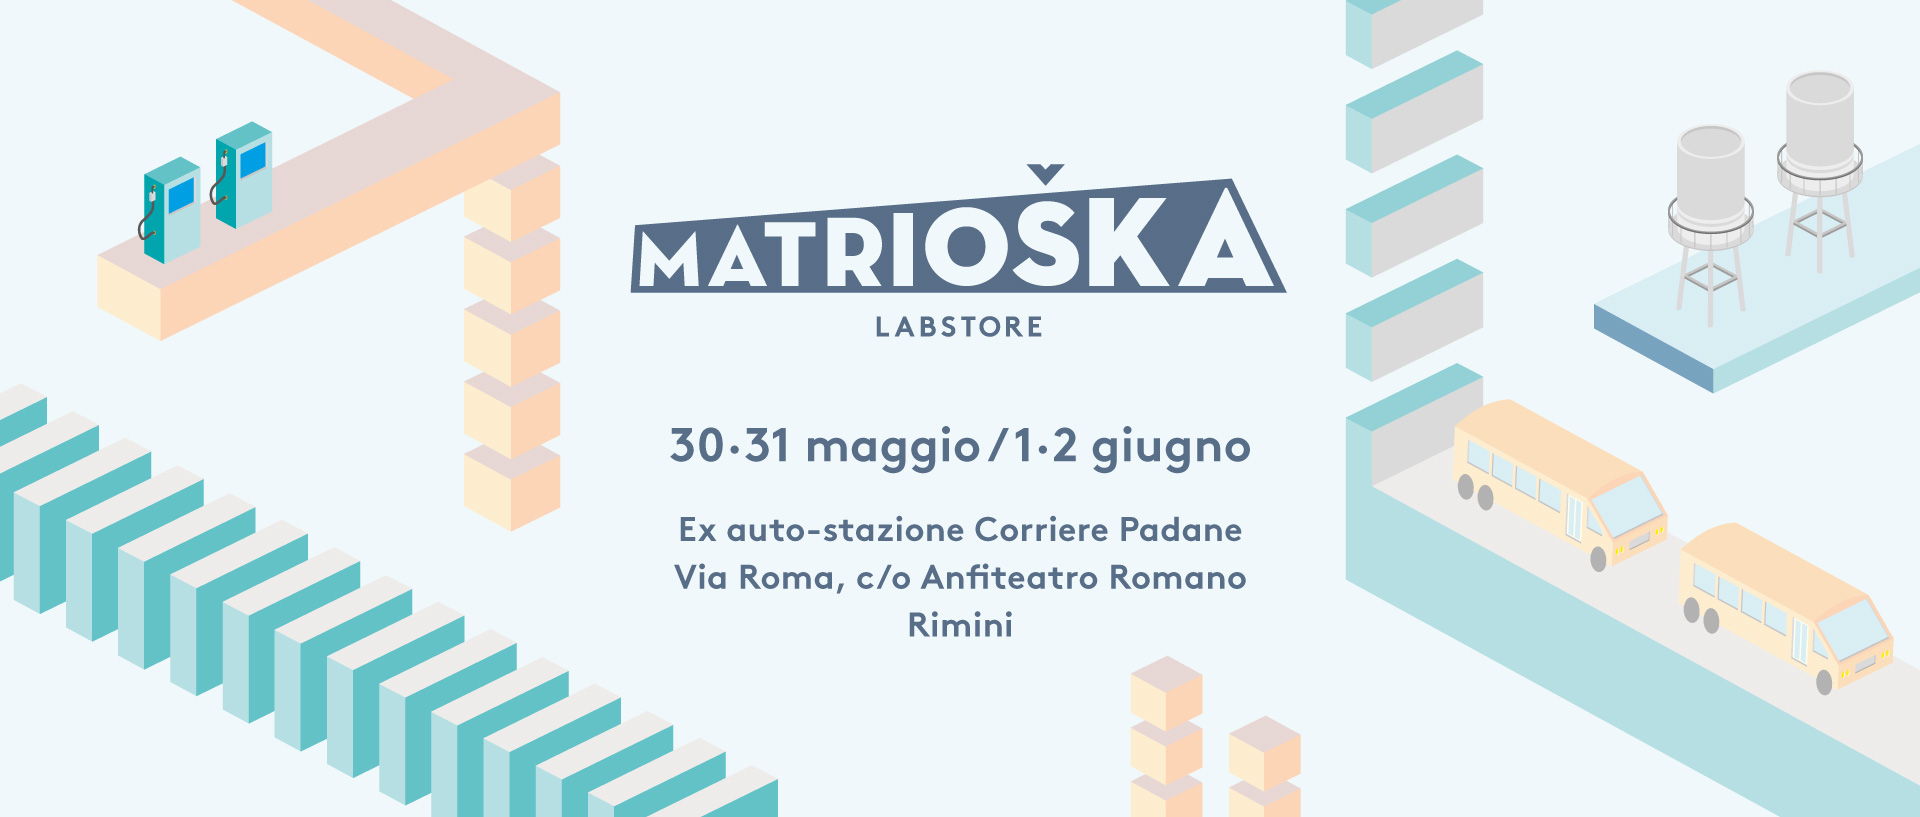 Matrioska labstore Rimini | edizione #7 info NEW